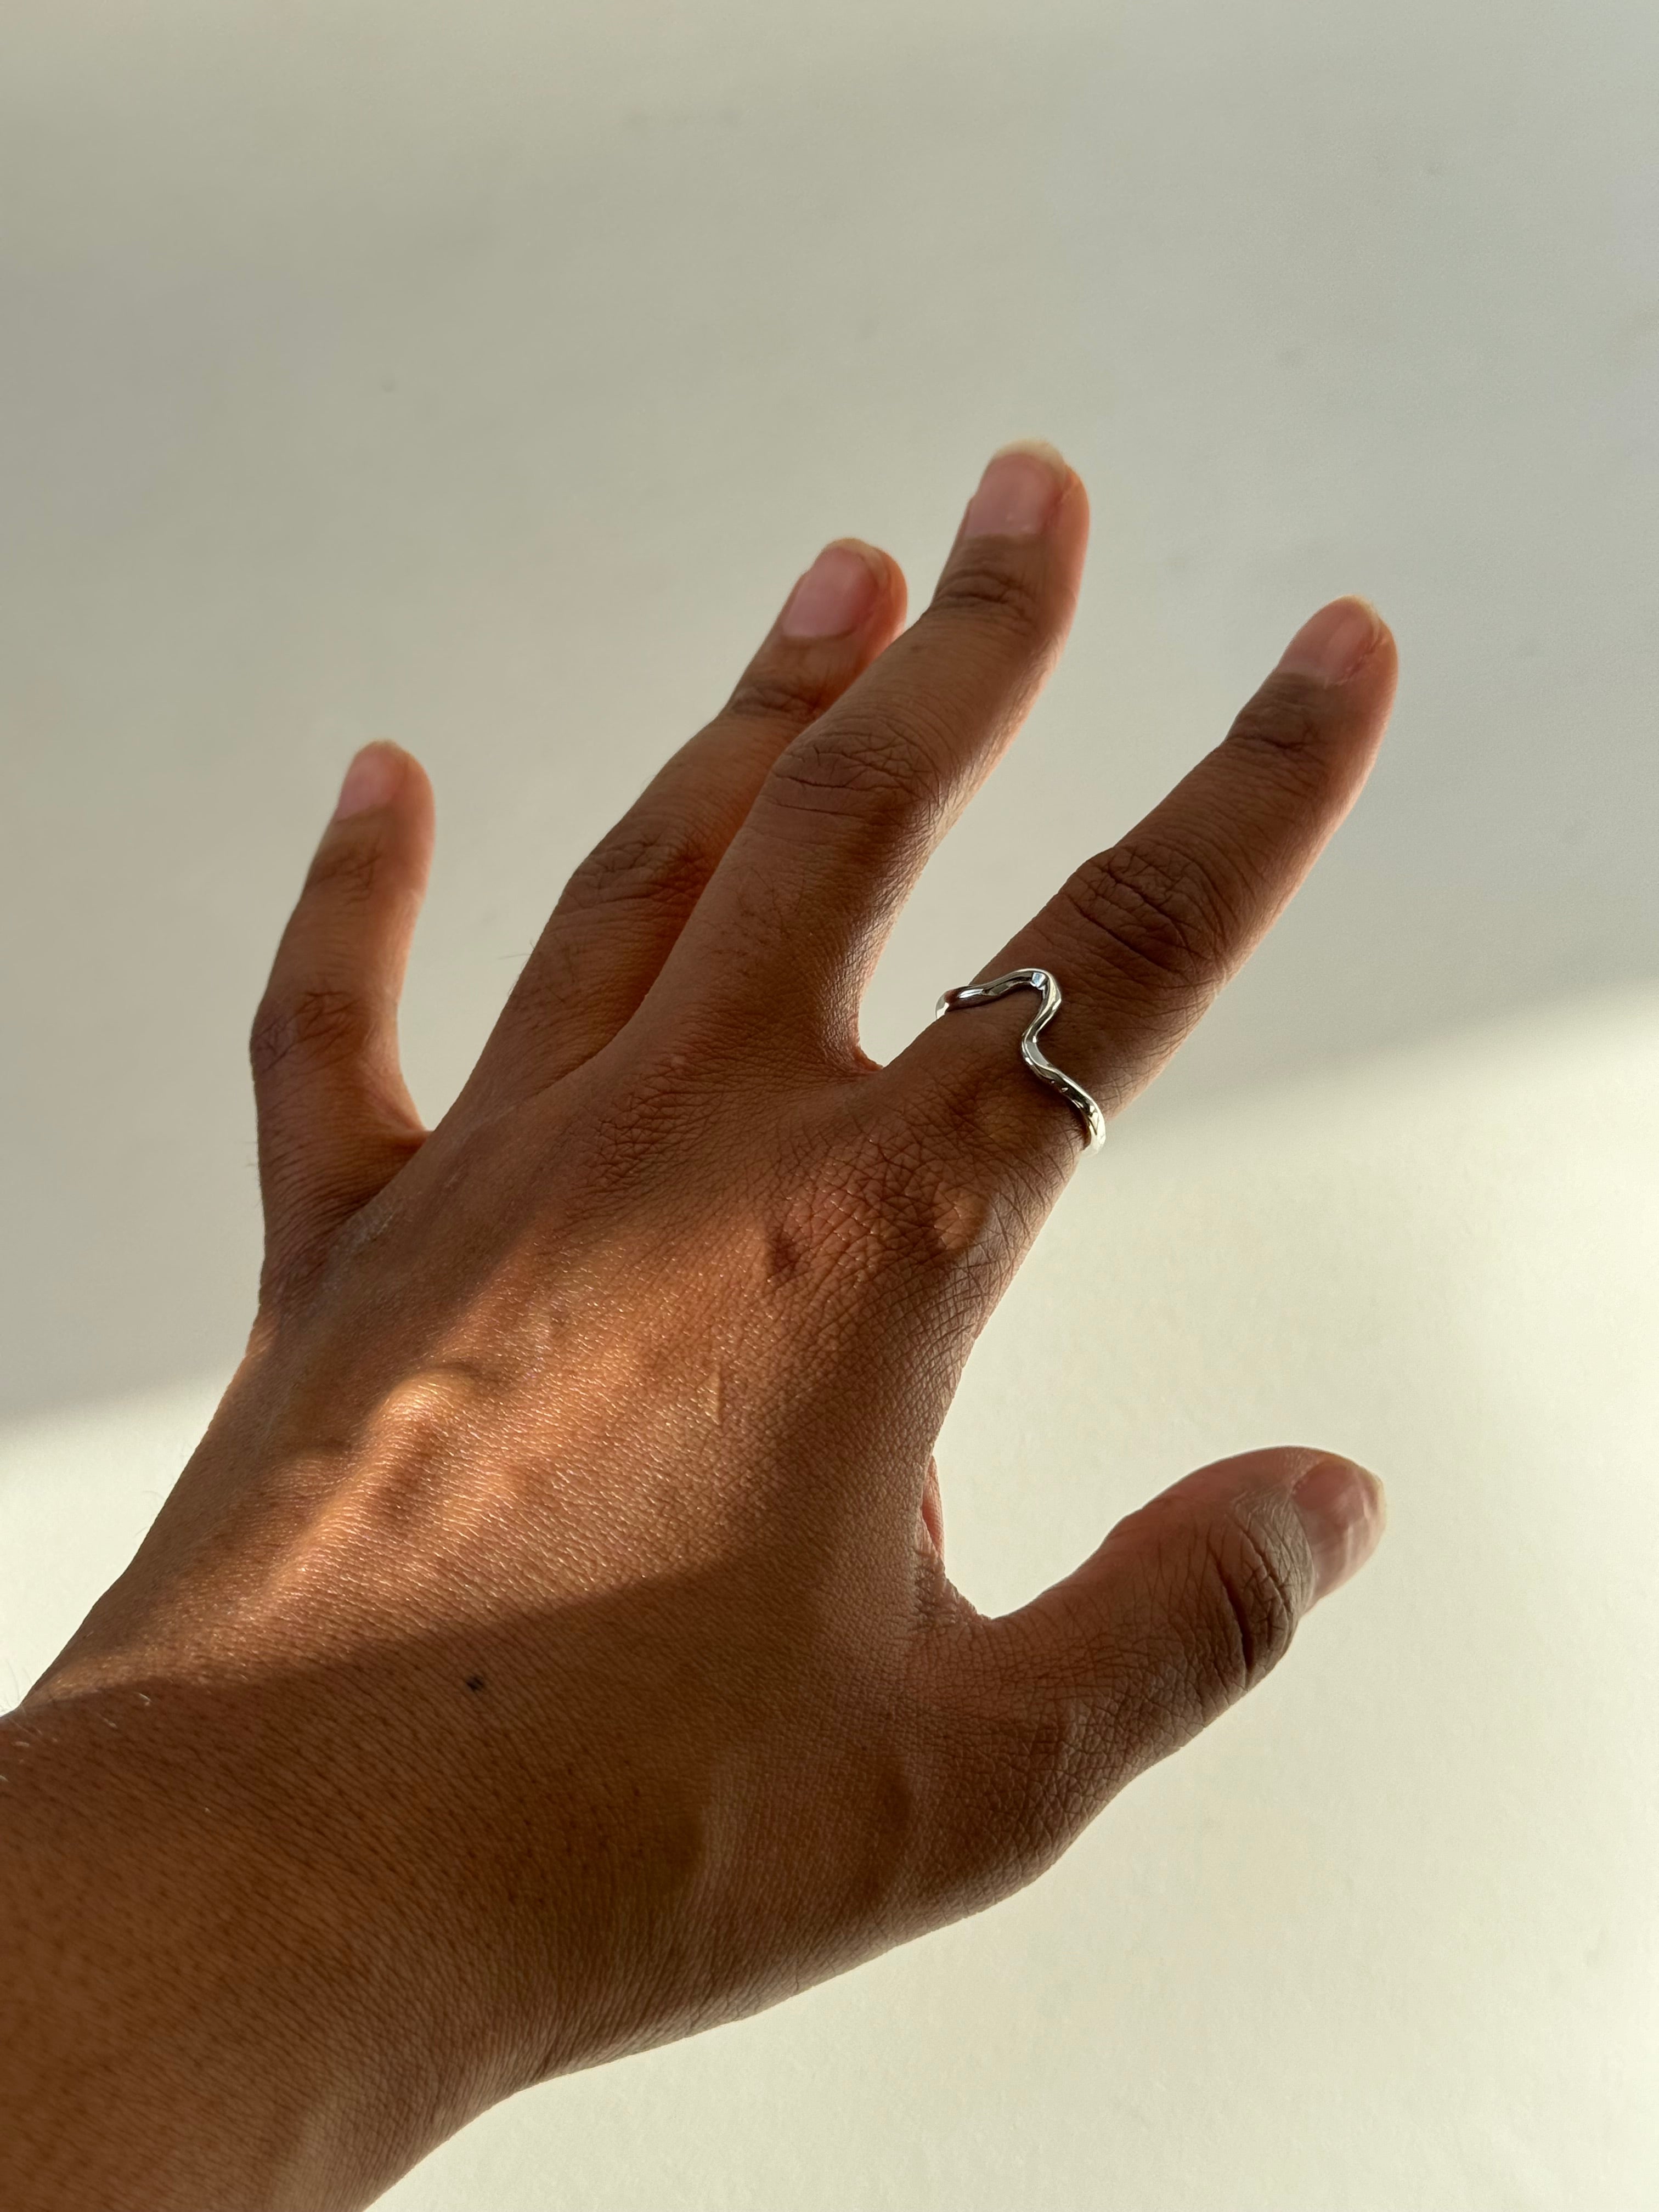 1.5 ग्राम के नीचे बहुत ही सुंदर है यह अंगूठी डिजाइन | light weight gold ring  designs with price - YouTube